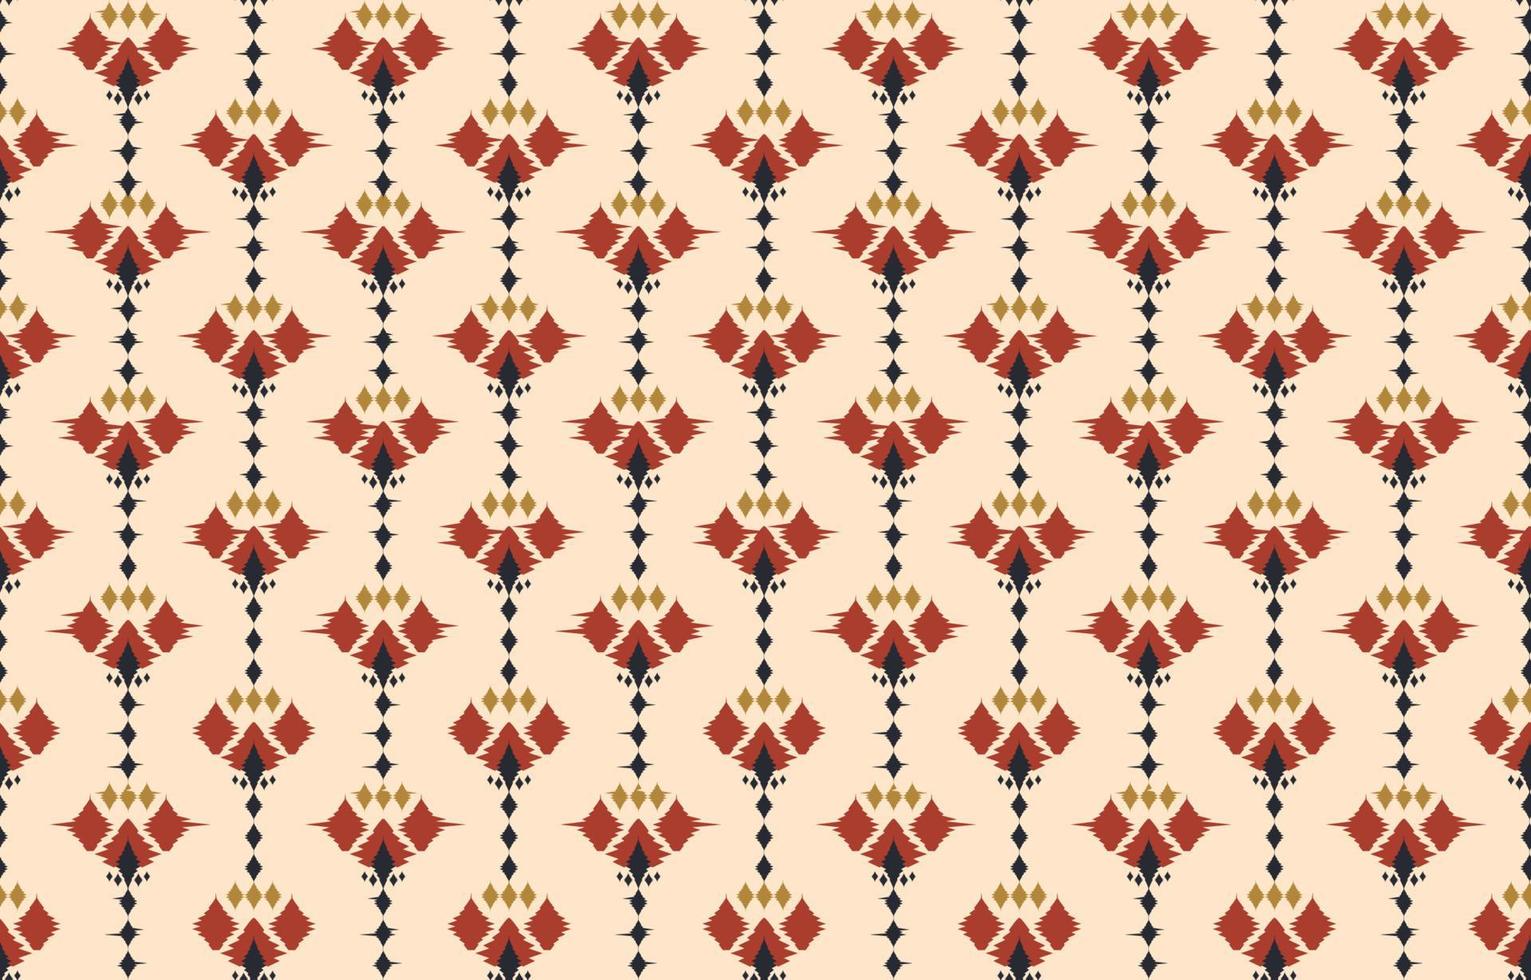 hermoso arte abstracto étnico ikat. patrón de kasuri sin costuras en bordado tribal, popular, estampado de adorno de arte geométrico floral. diseño para moqueta, papel pintado, ropa, envoltura, tela, cubierta. vector